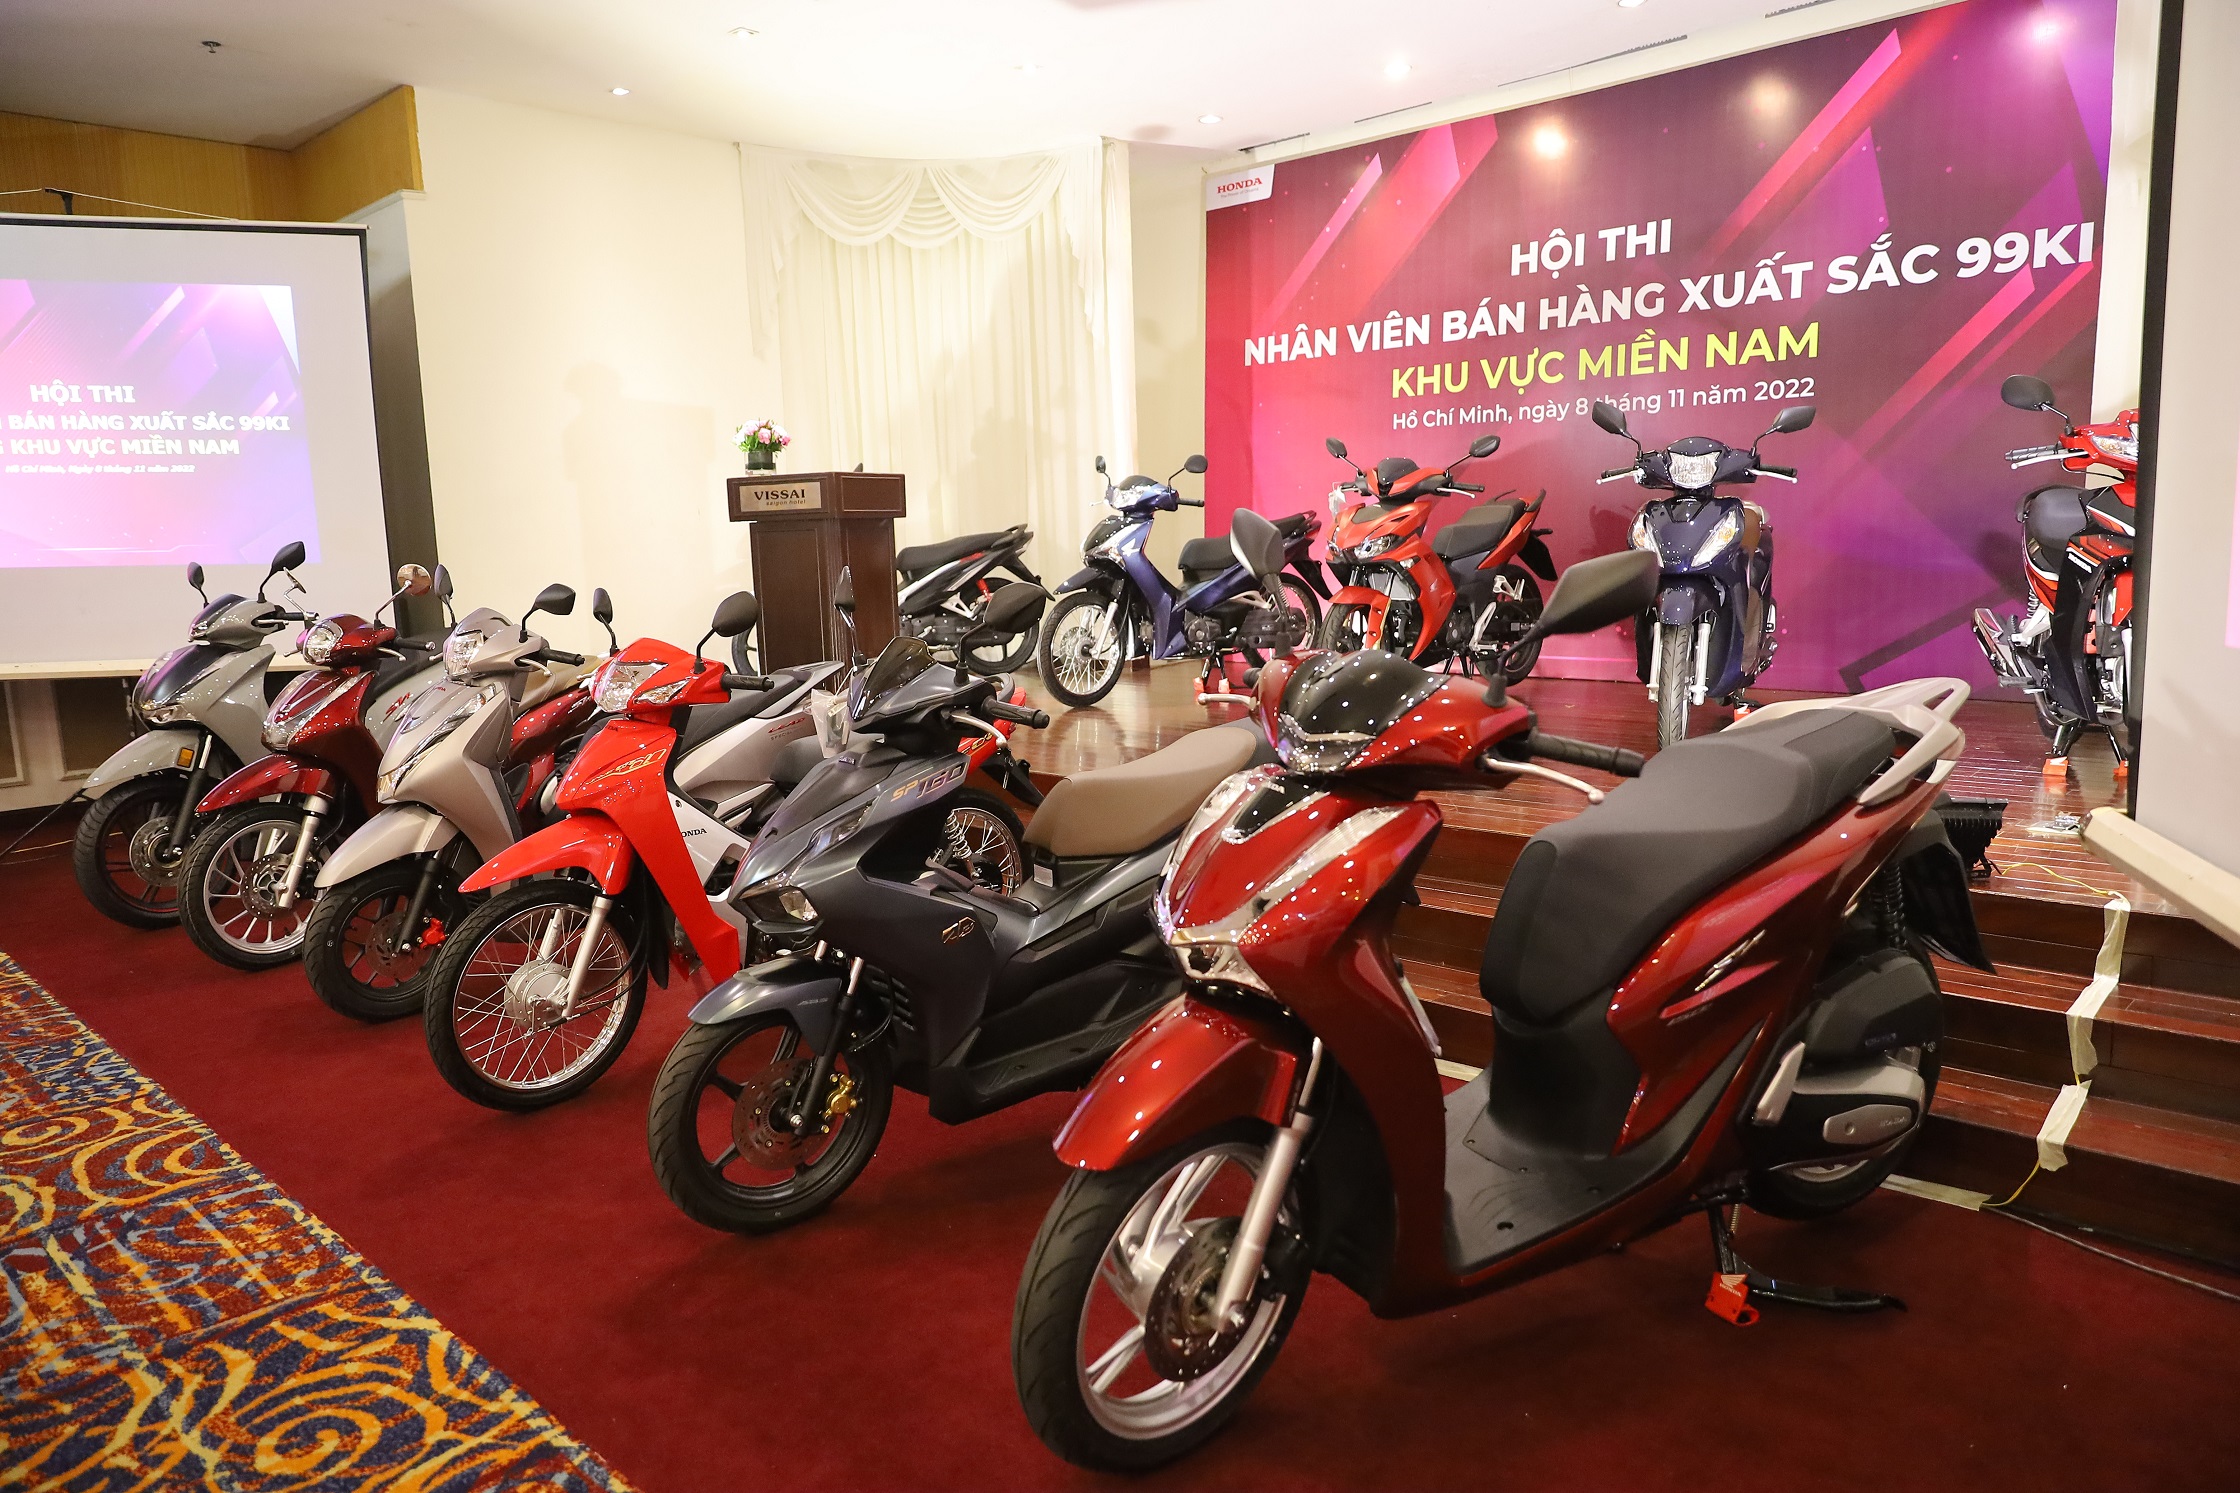 Sôi động vòng thi khu vực hội thi “Nhân viên Bán hàng xuất sắc 2022” của Honda Việt Nam img-6679.JPG